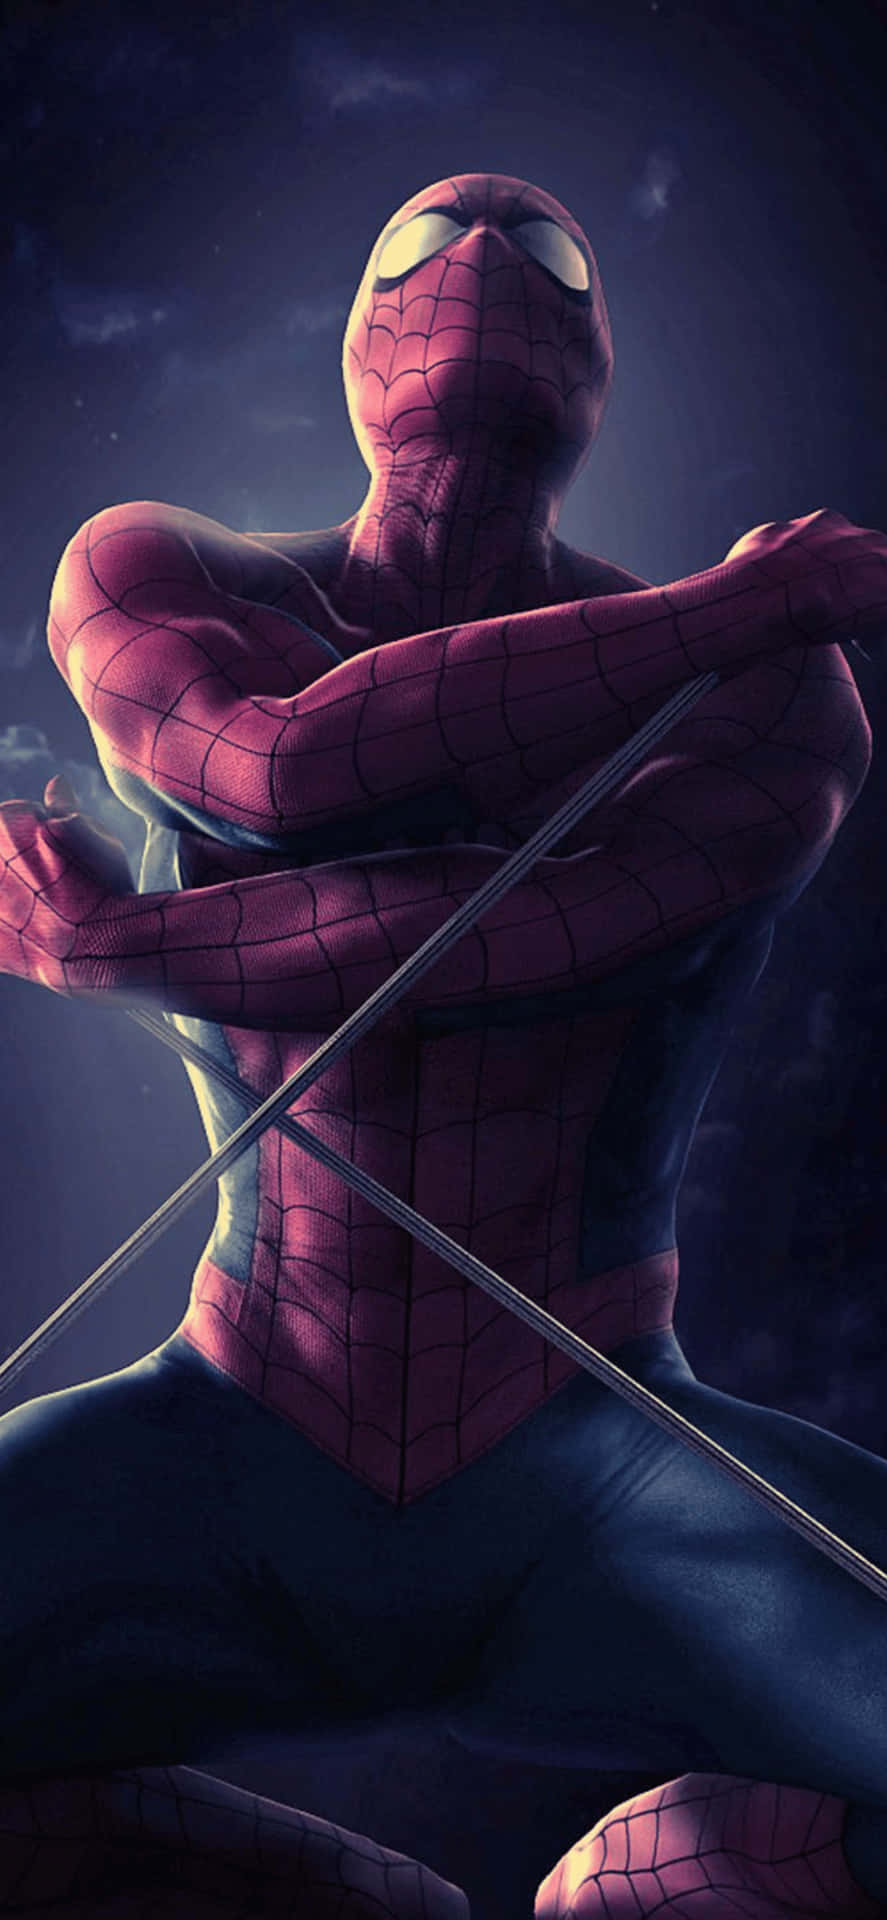 Iphonexs Max Bakgrund Med Marvel Spiderman